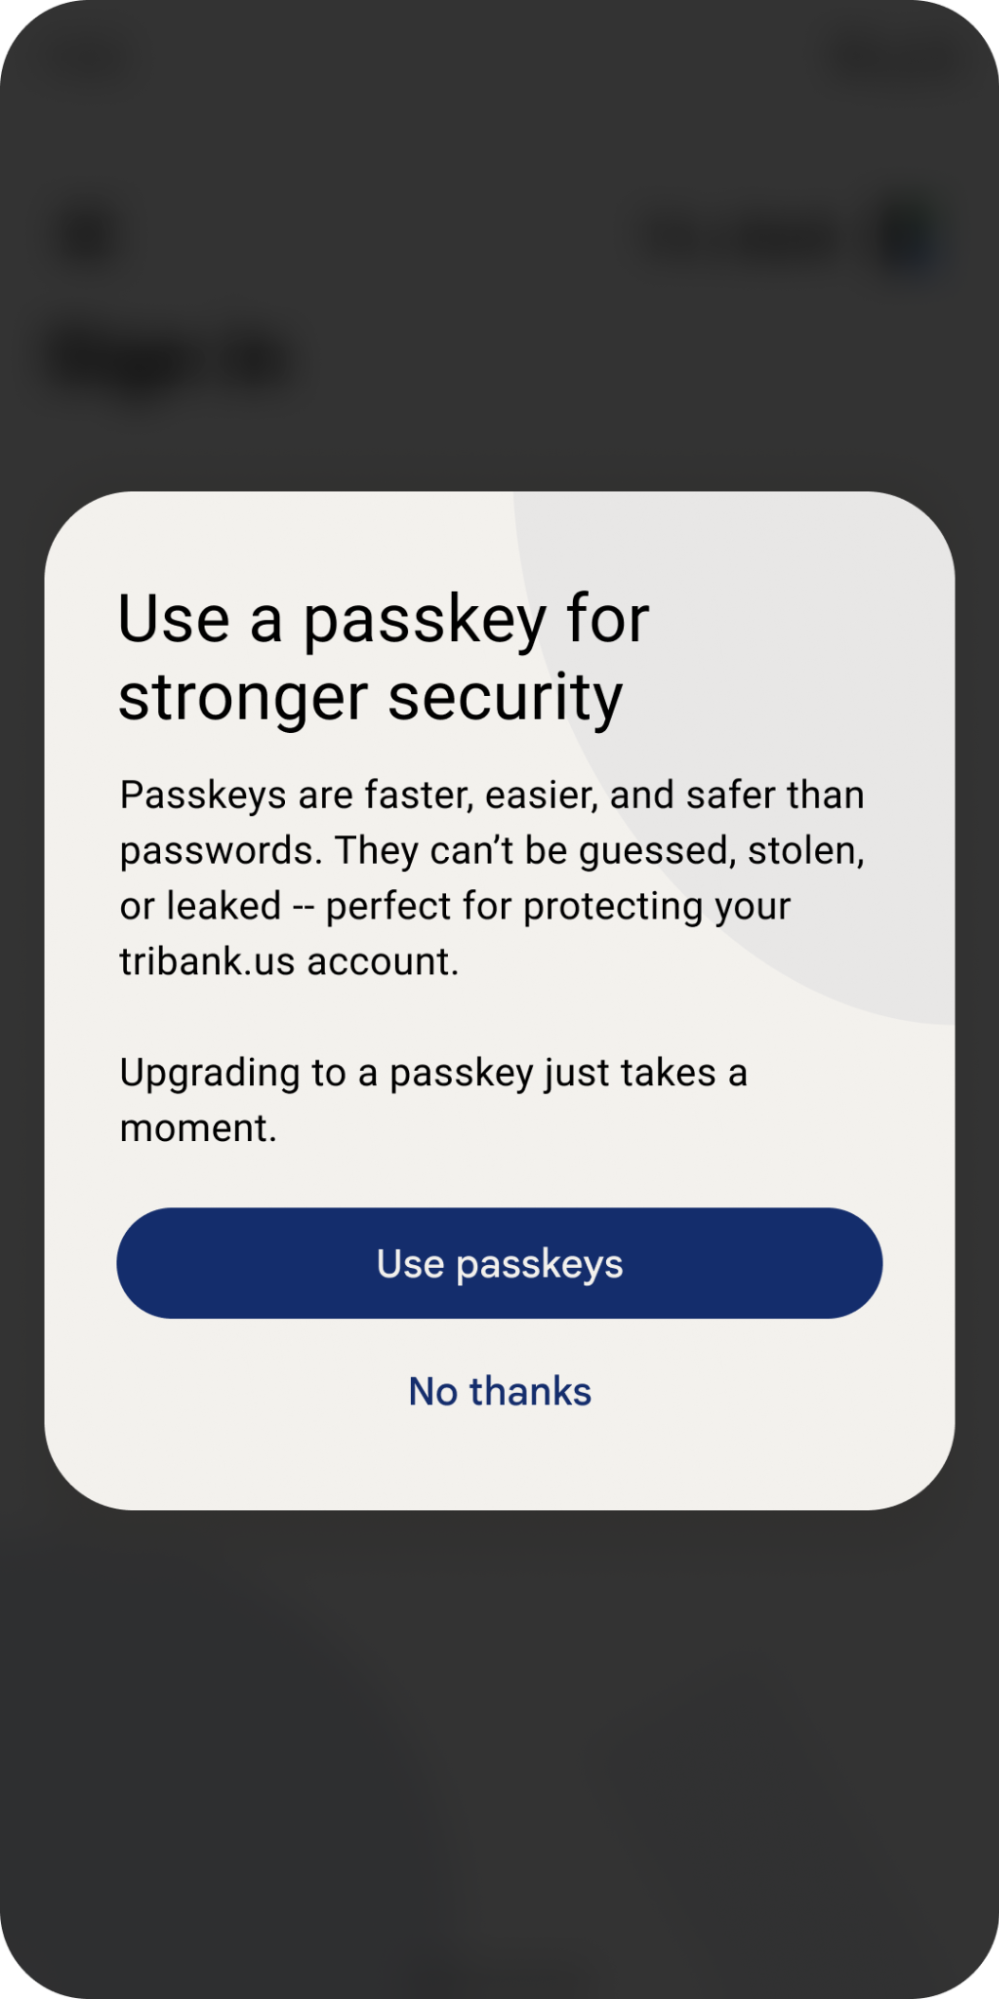 Cửa sổ bật lên mời người dùng sử dụng khoá truy cập để có mật khẩu nhanh hơn và an toàn hơn.